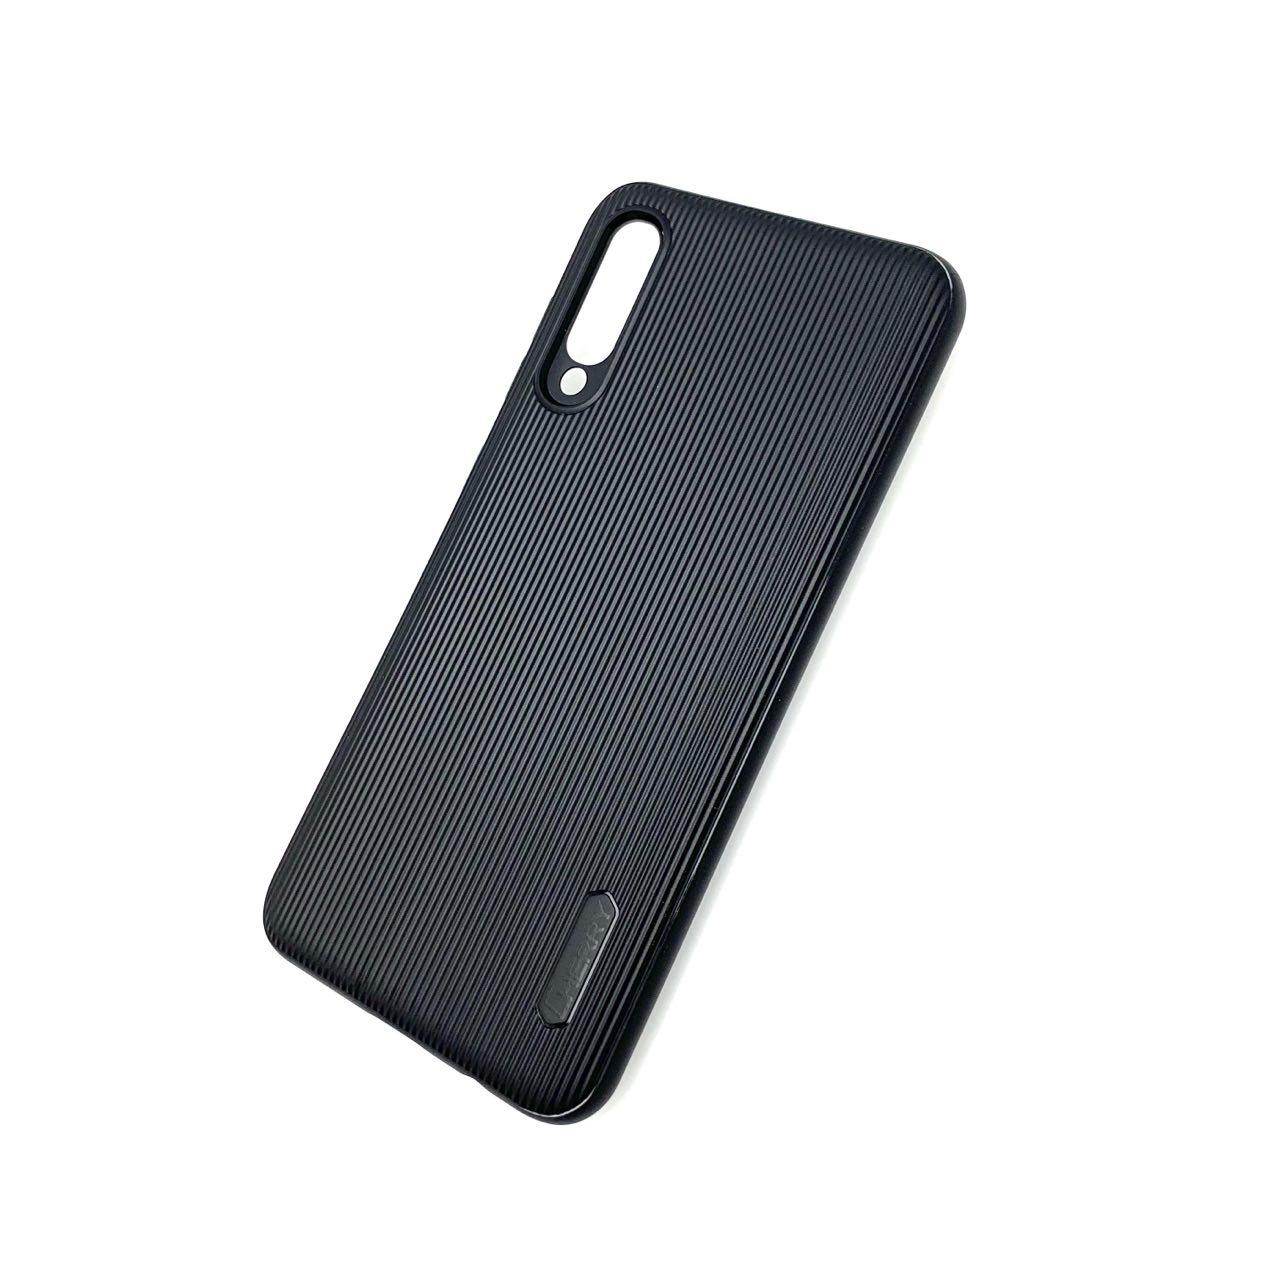 Чехол накладка Cherry для SAMSUNG Galaxy A50 (SM-A505), A30s (SM-A307), A50s (SM-A507), силикон, полоски, цвет черный.